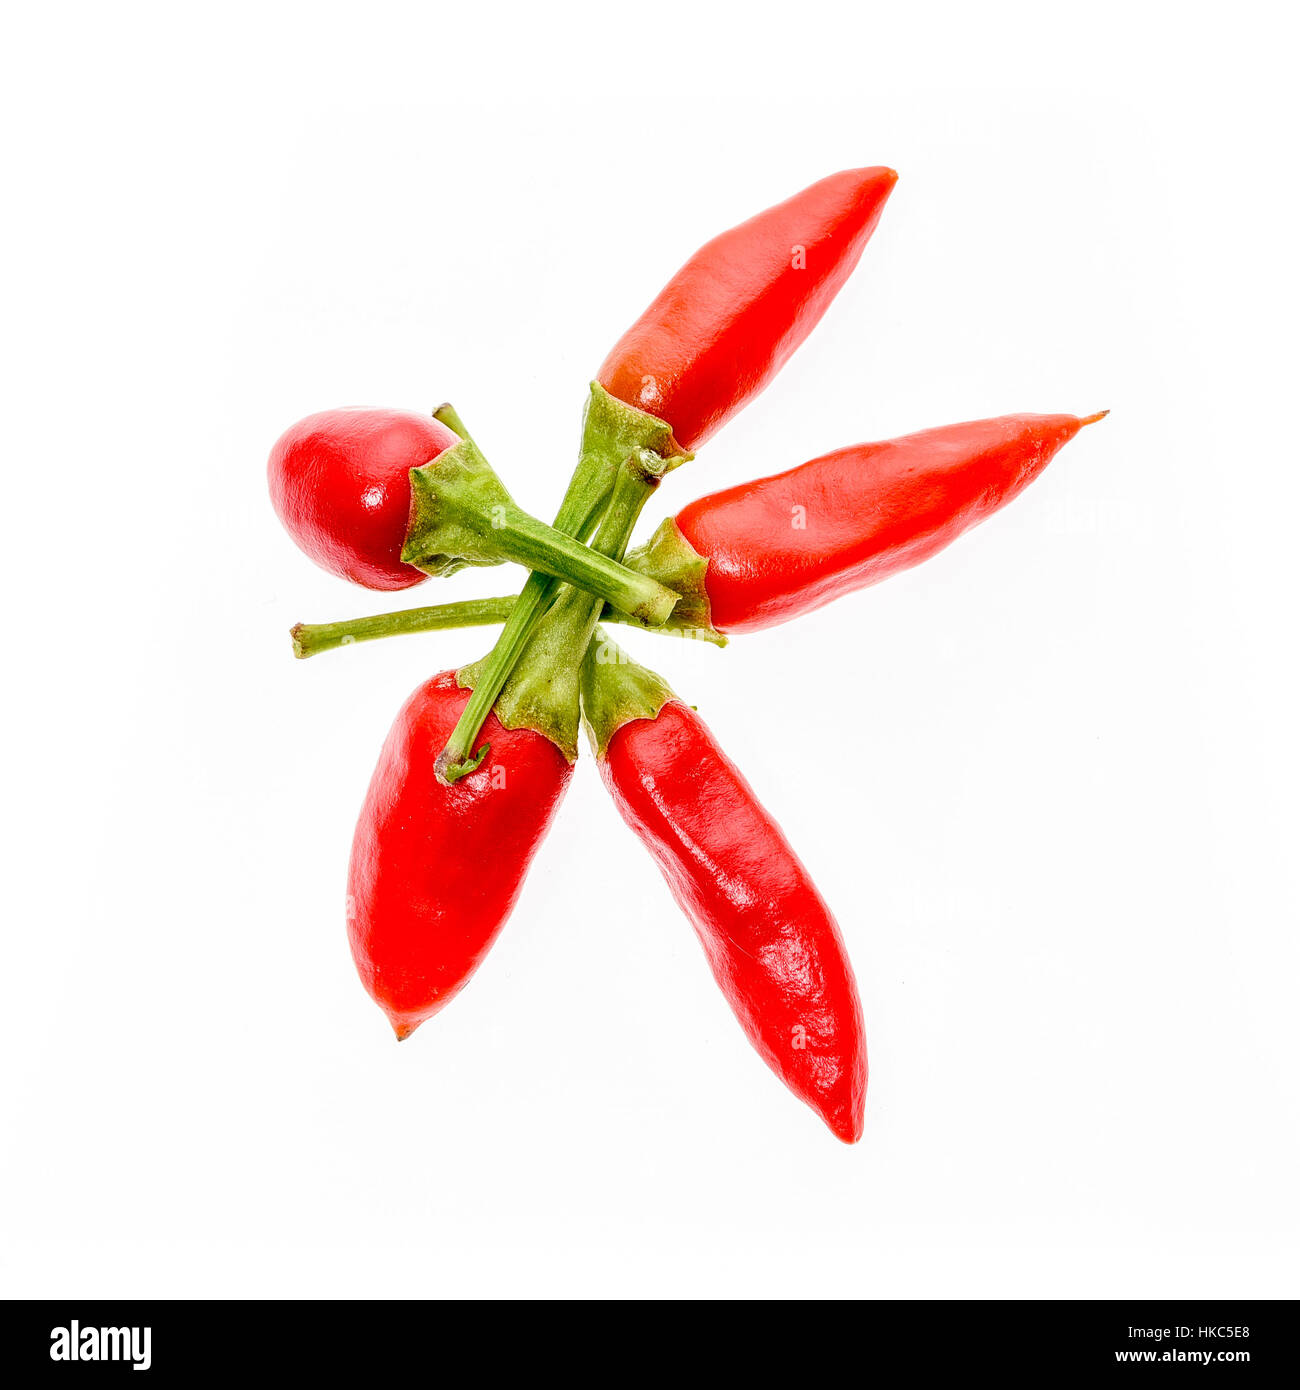 Multible diversi Red Hot Chili Peppers Cayenne, serrano con stelo verde. Cayenne, Serrano o siciliana di varietà di peperoncino. Studio immagine isolata su wh Foto Stock